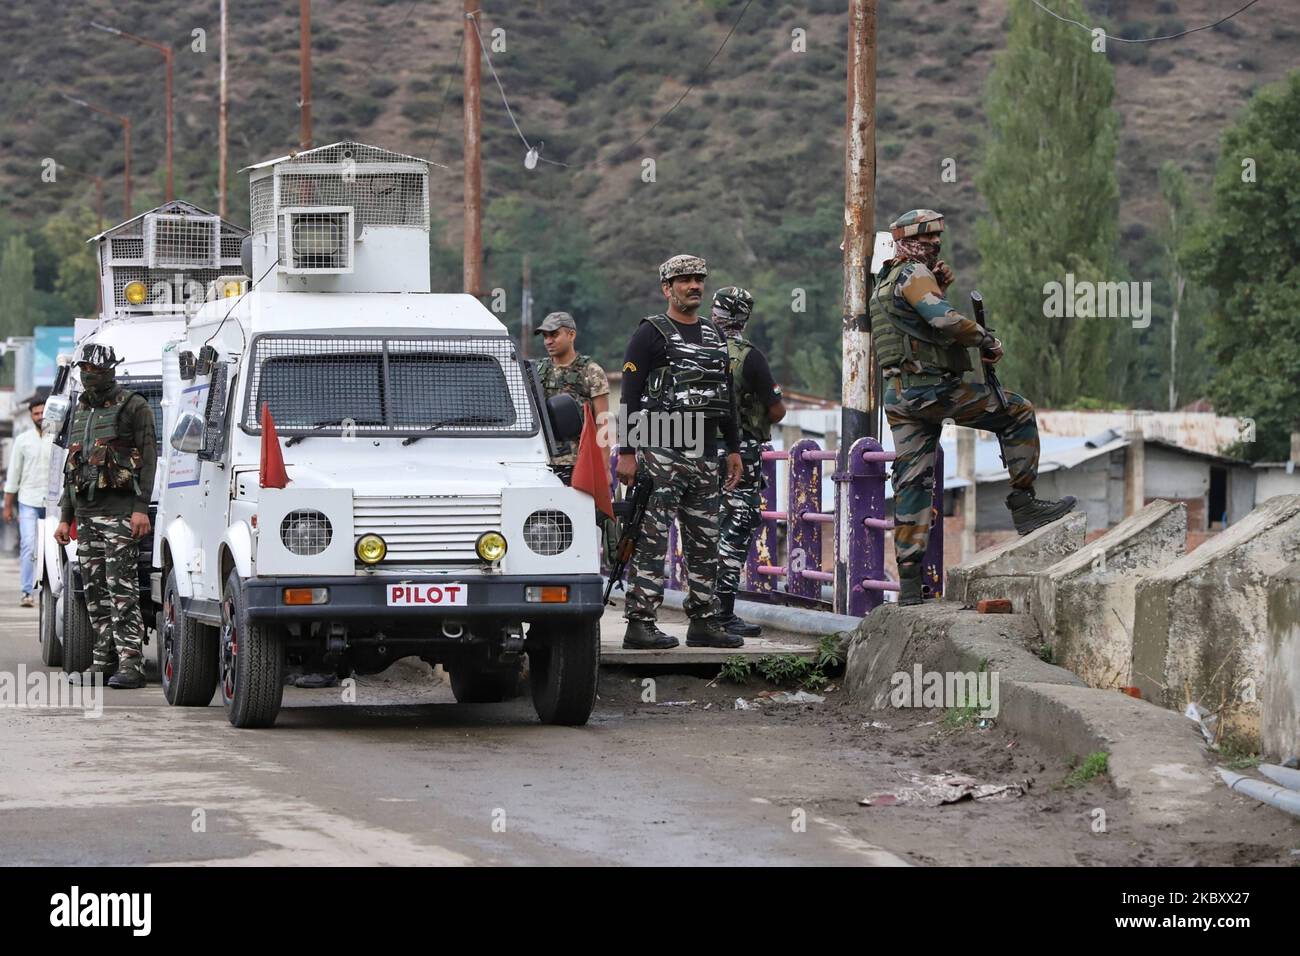 Des militants ont lancé une grenade vers un véhicule de l'armée près de l'ancien hôpital qui a manqué la cible et a explosé sur la route blessant six civils le 31 août 2020, l'armée a par la suite lancé une opération de recherche dans la région (photo de Nasir Kachroo/NurPhoto) Banque D'Images